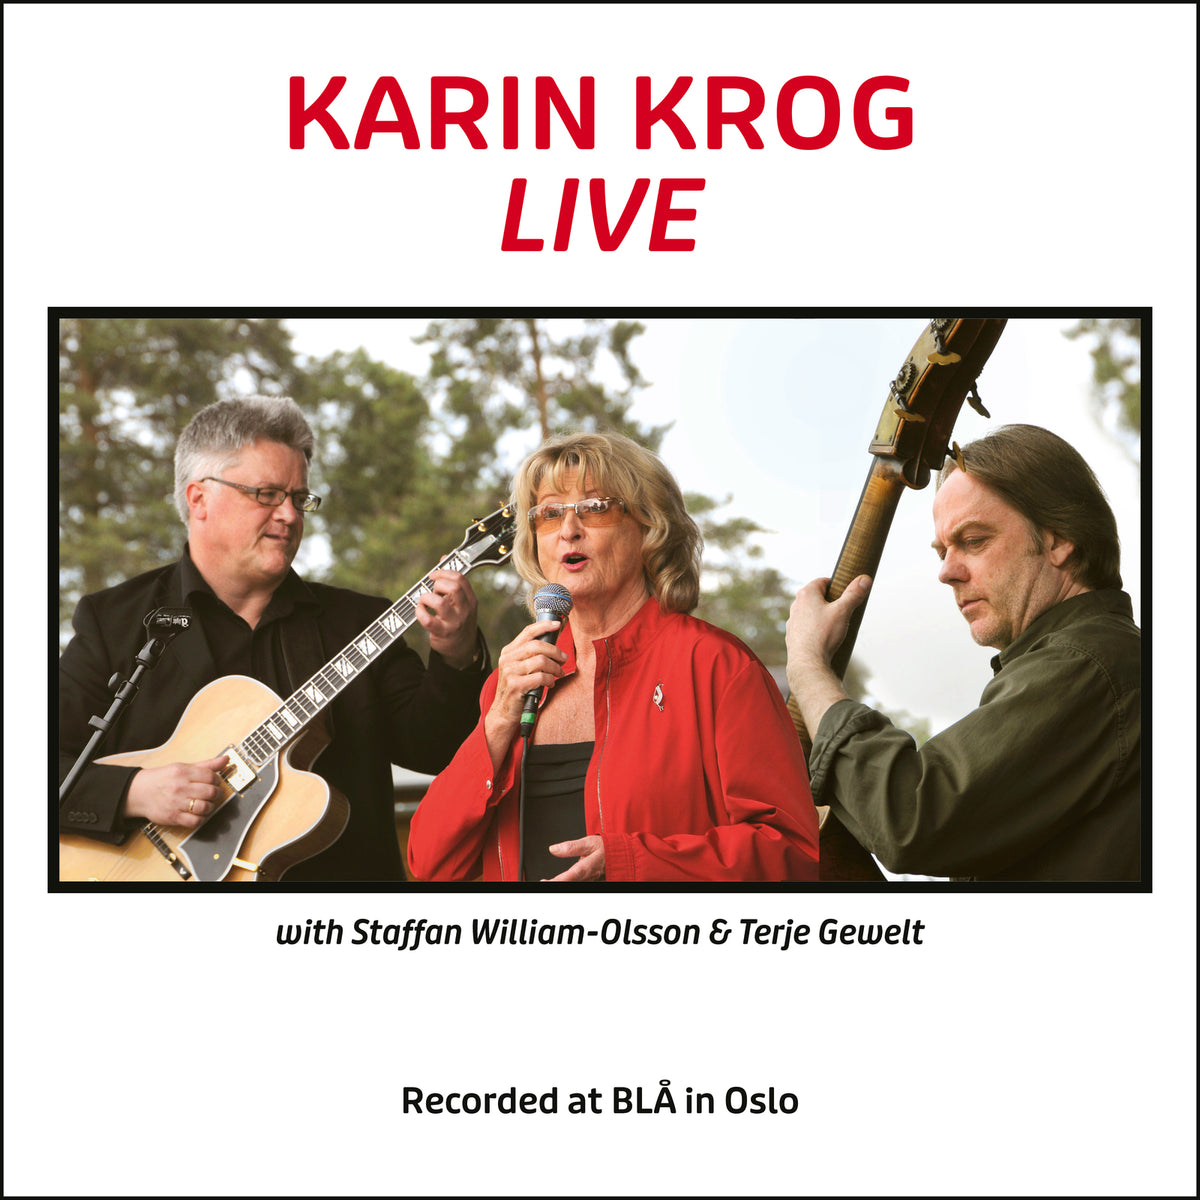 Karin Krog - Karin Krog Live - MR24